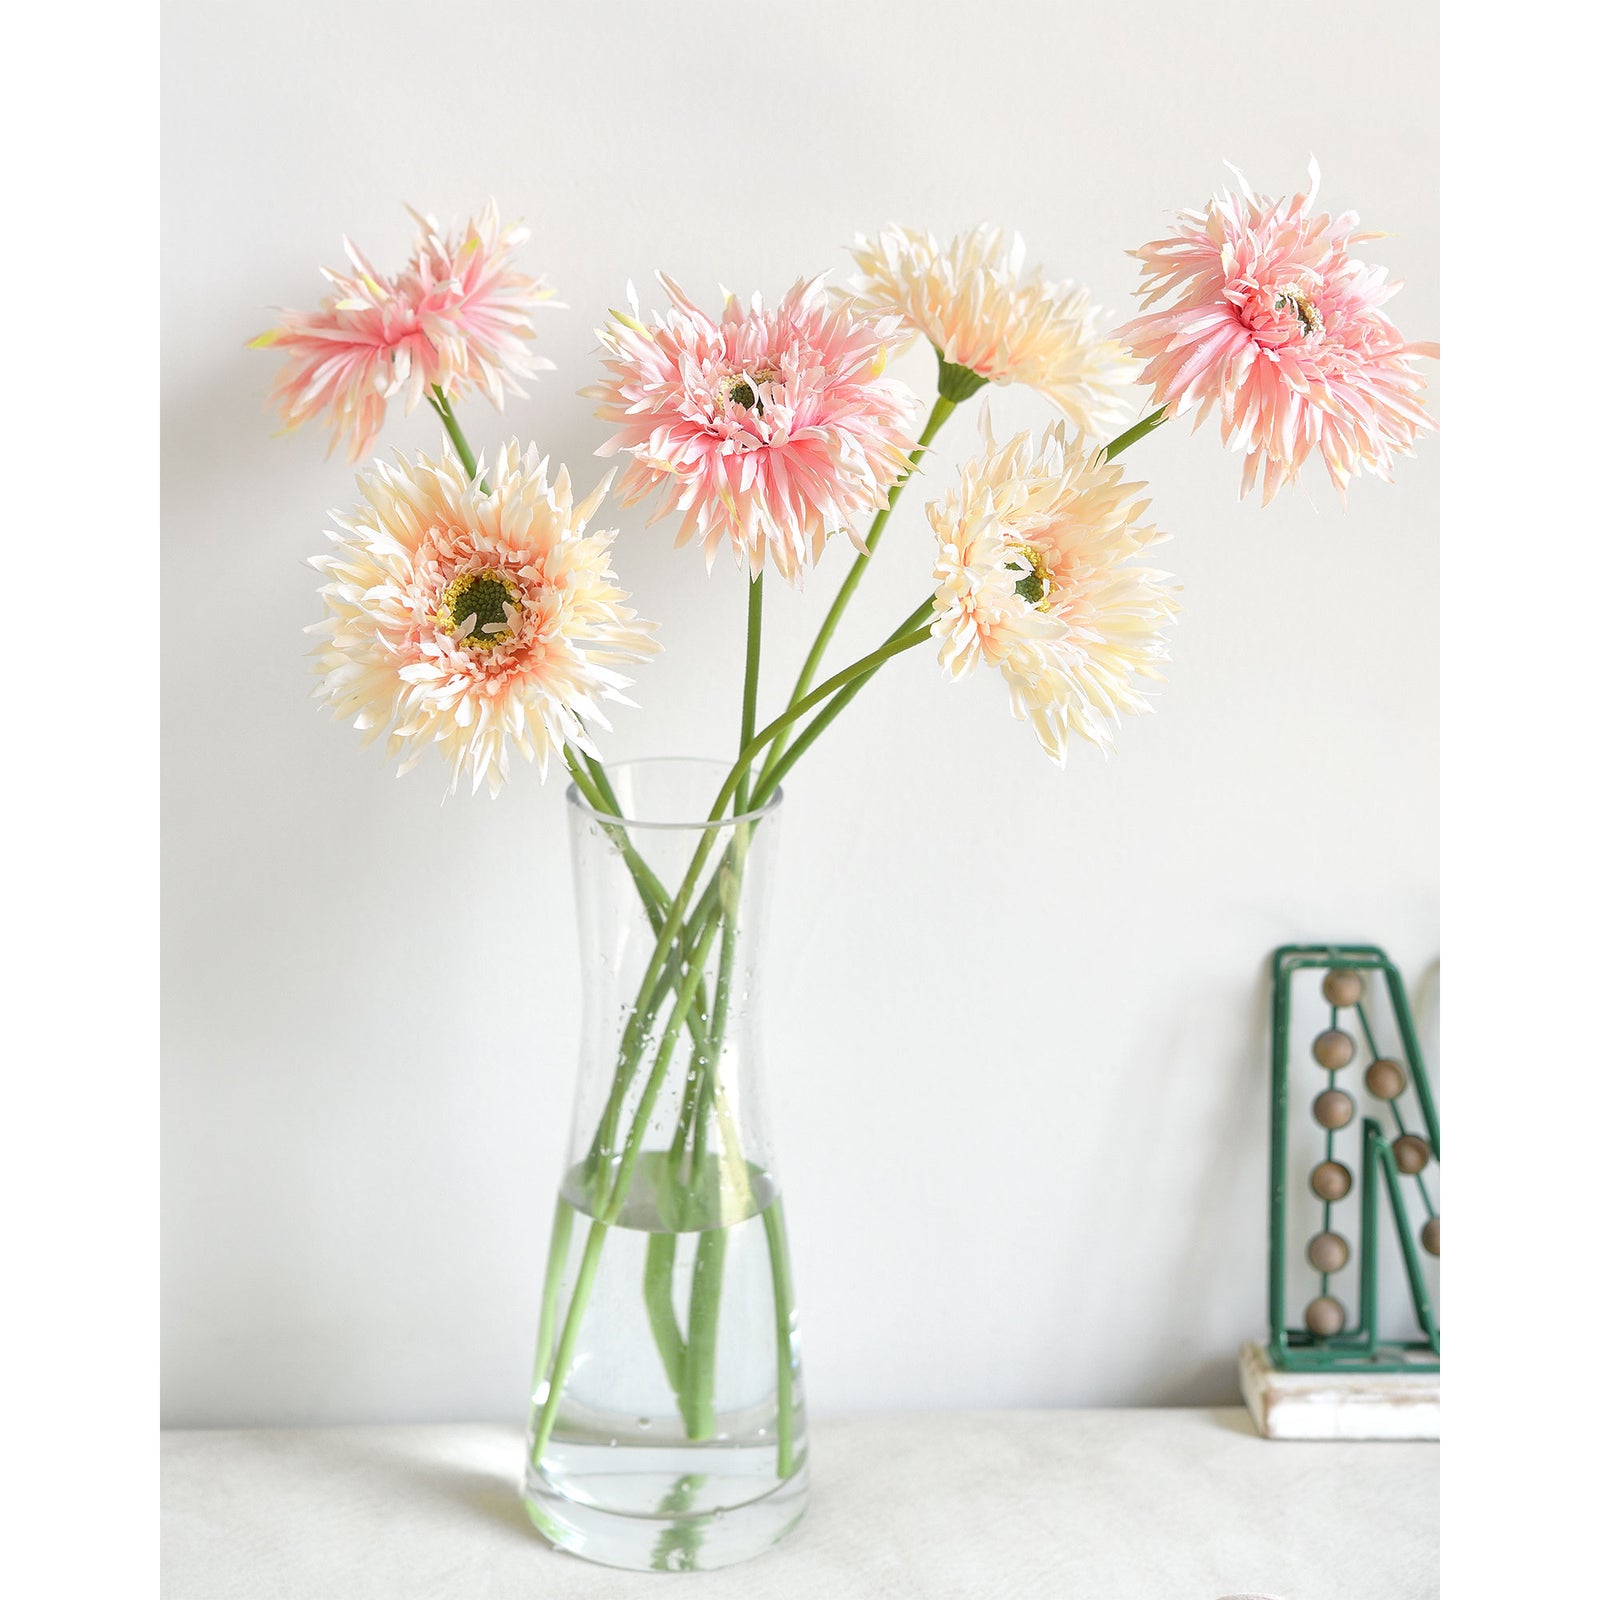 Mandys Pink Mix Spider Gerbera Daisies Silk Flowers Real Looking Artificial flowers Home Décor 16.5'' (6 Stems) FiveSeasonStuff